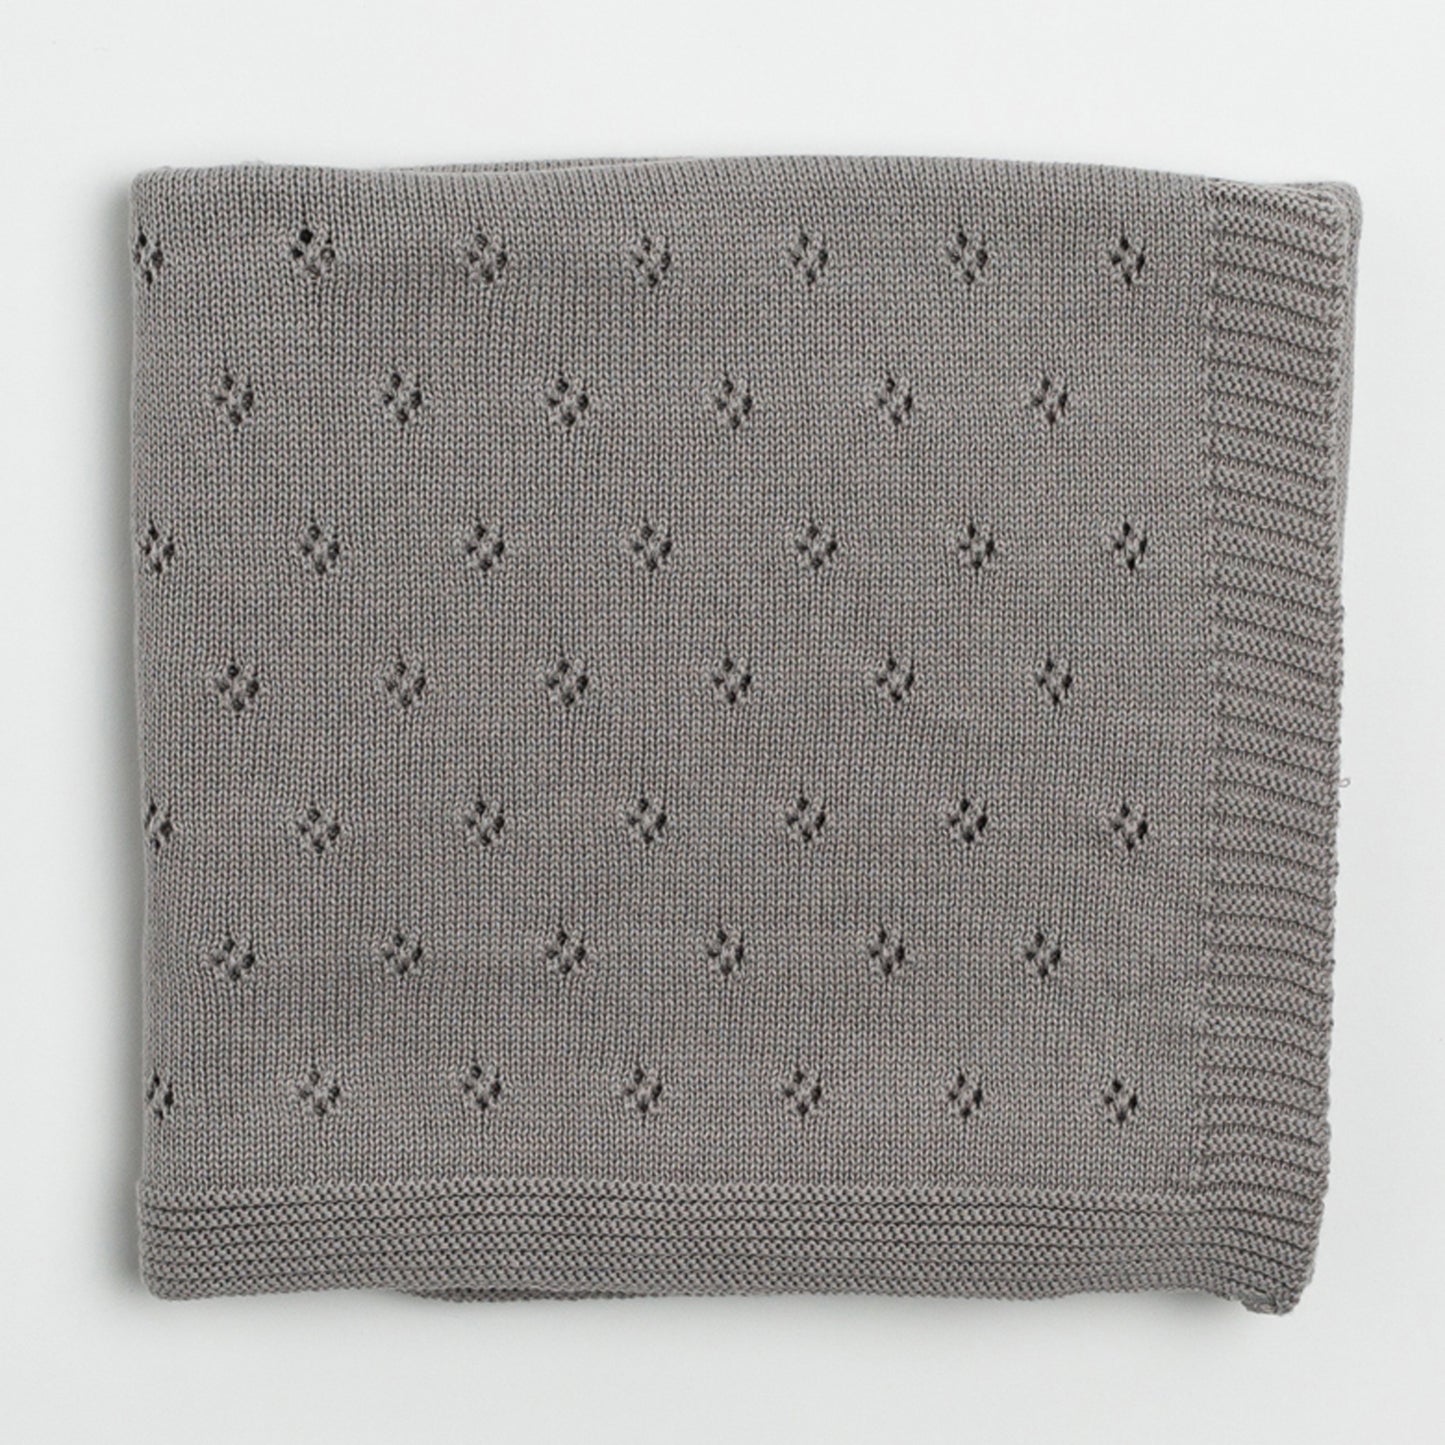 Zestt - Organic Cotton Clover Baby Blanket - Grey